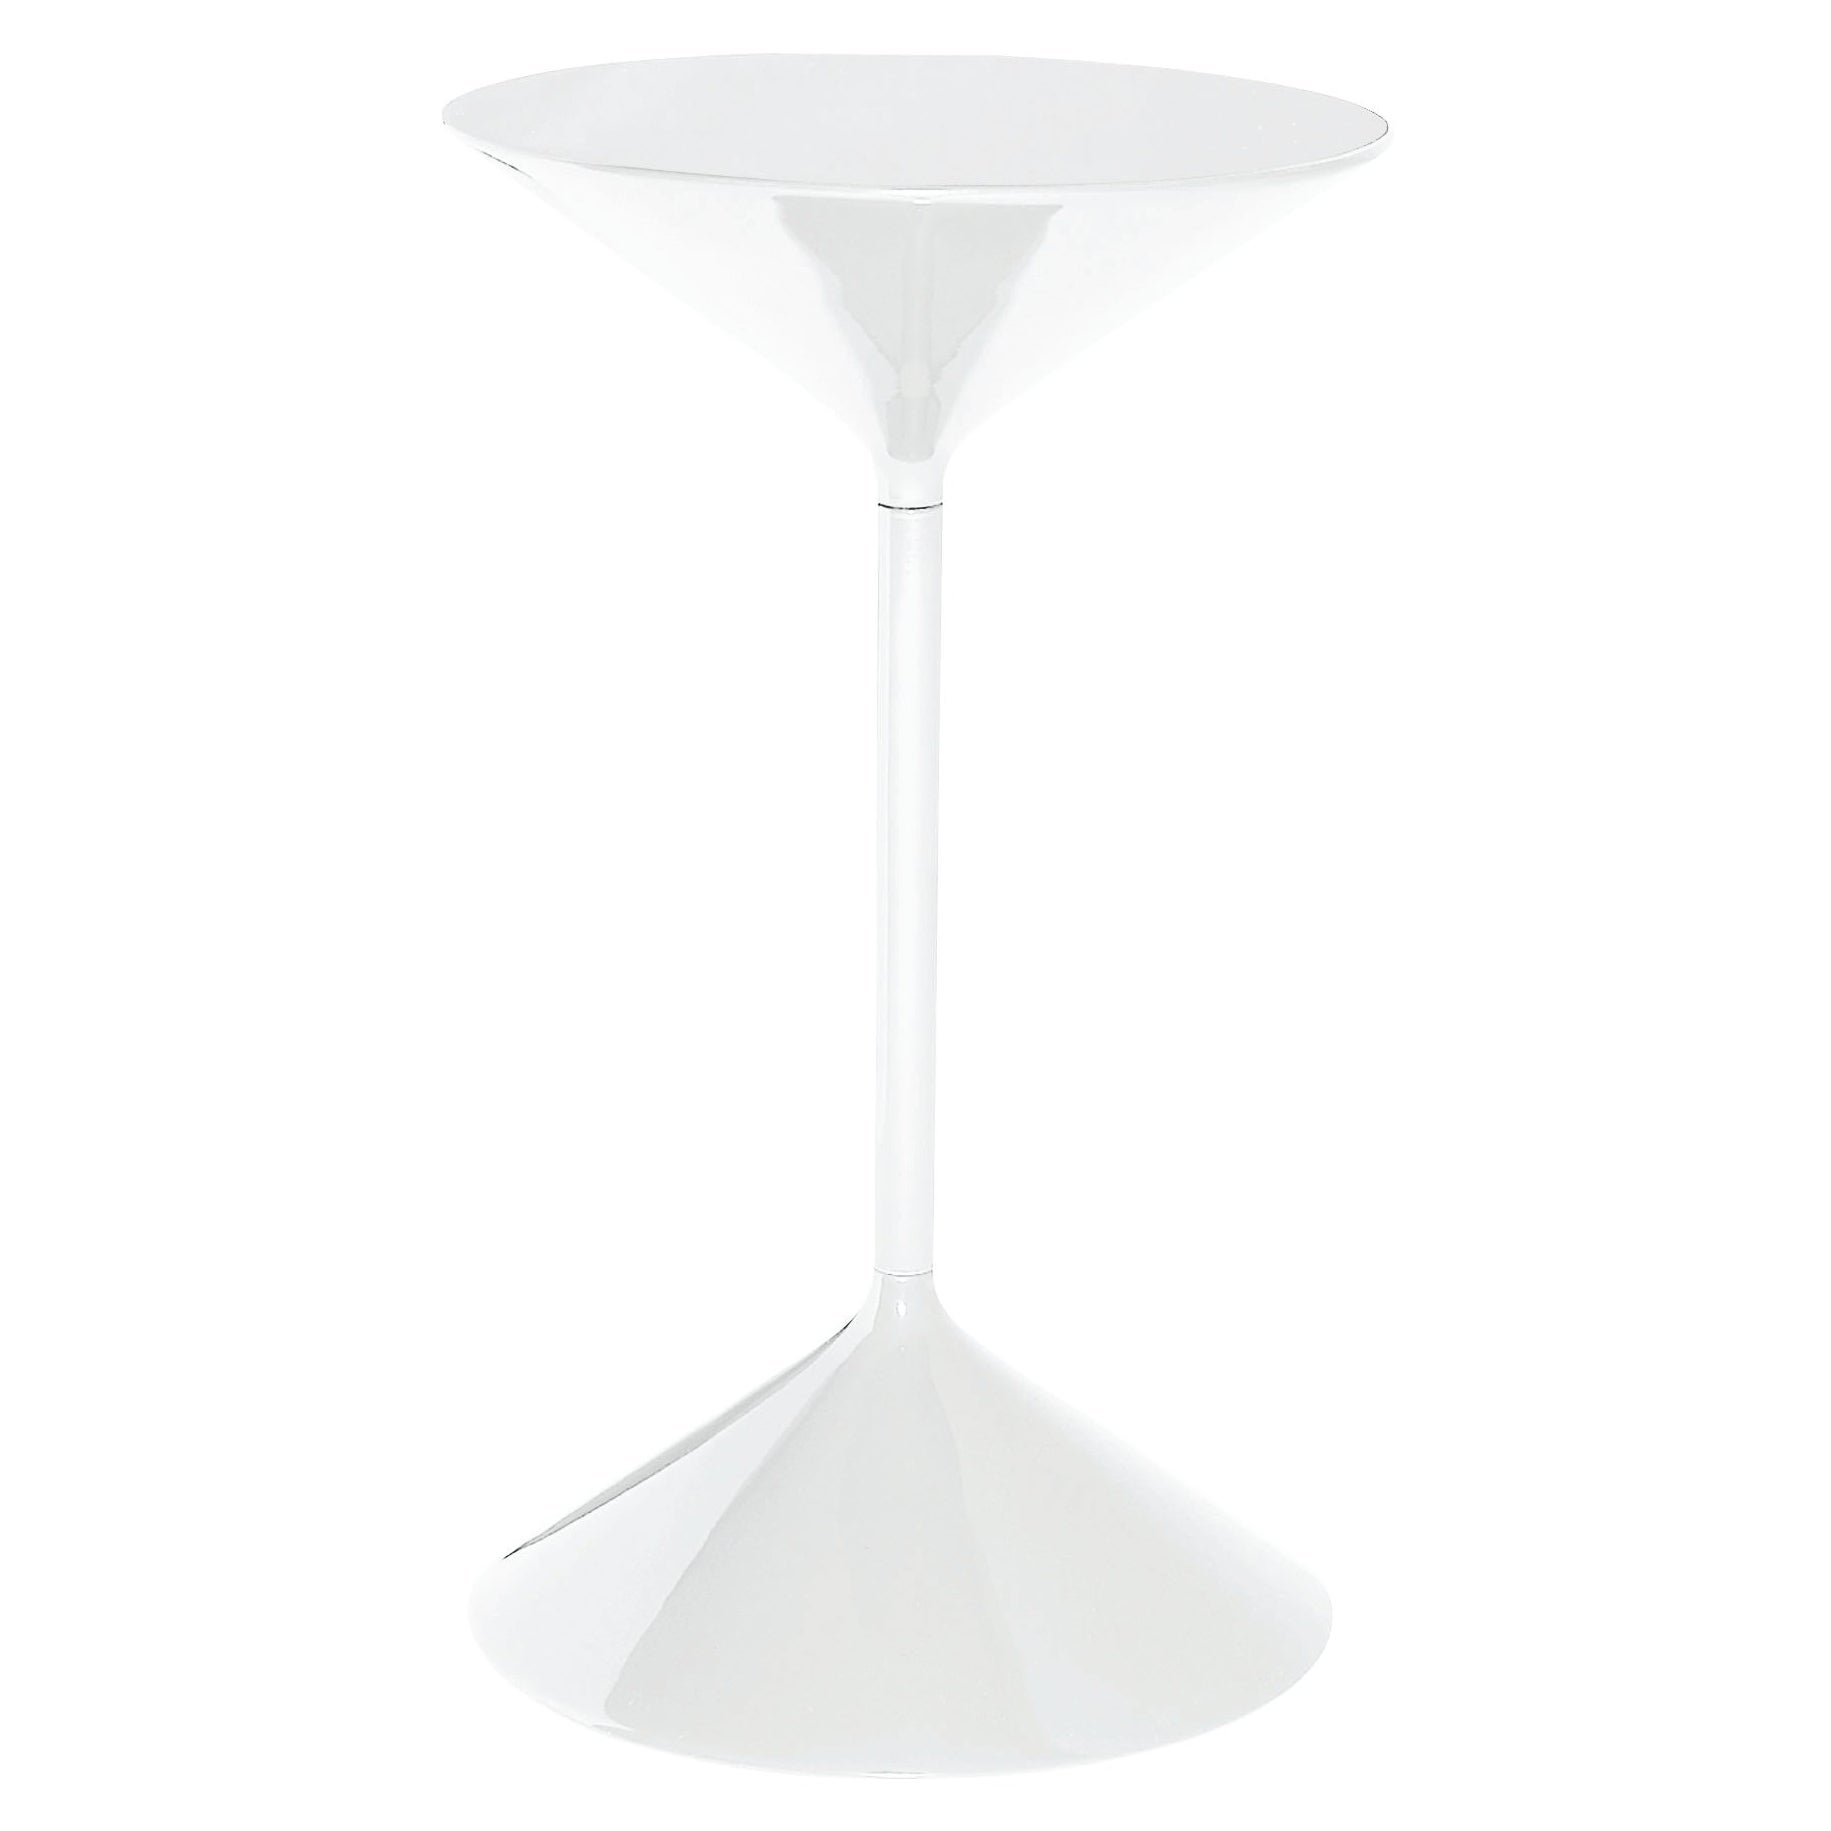 Zanotta Tempo Kleiner Tisch in weißer Ausführung mit lackierter Platte von Prospero Rasulo